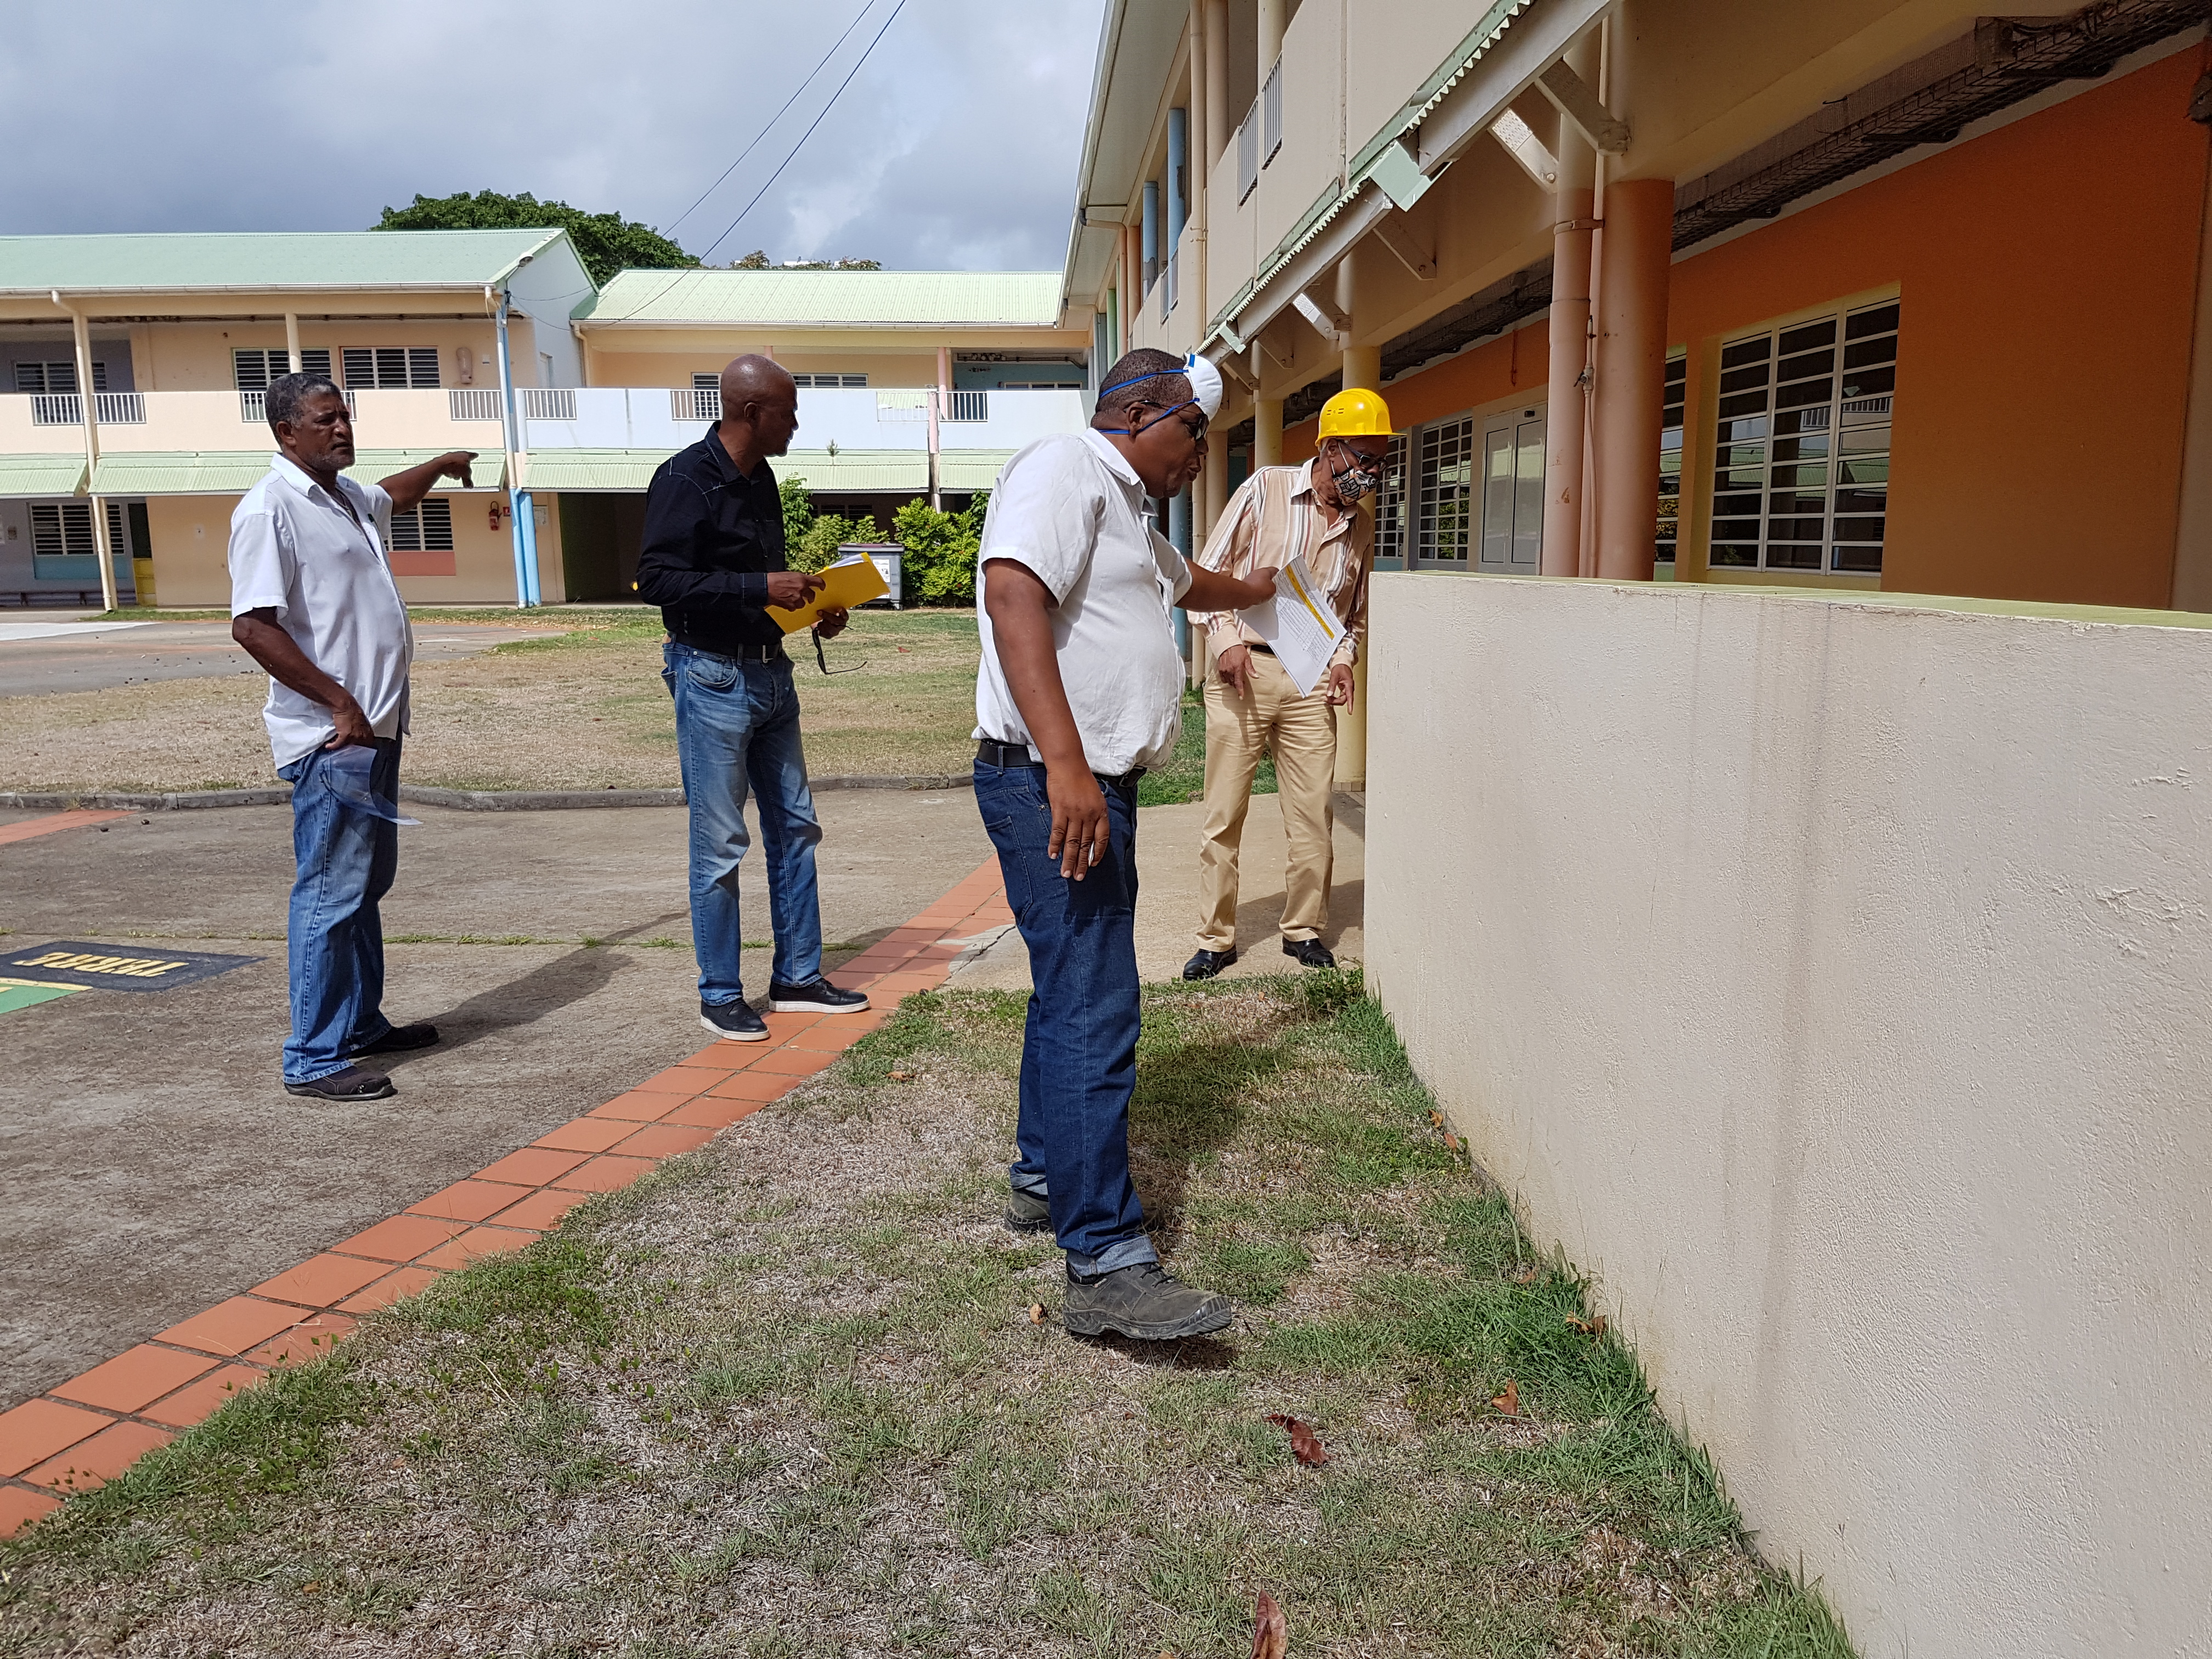     La Martinique se prépare à rouvrir toutes ses écoles le 22 juin

